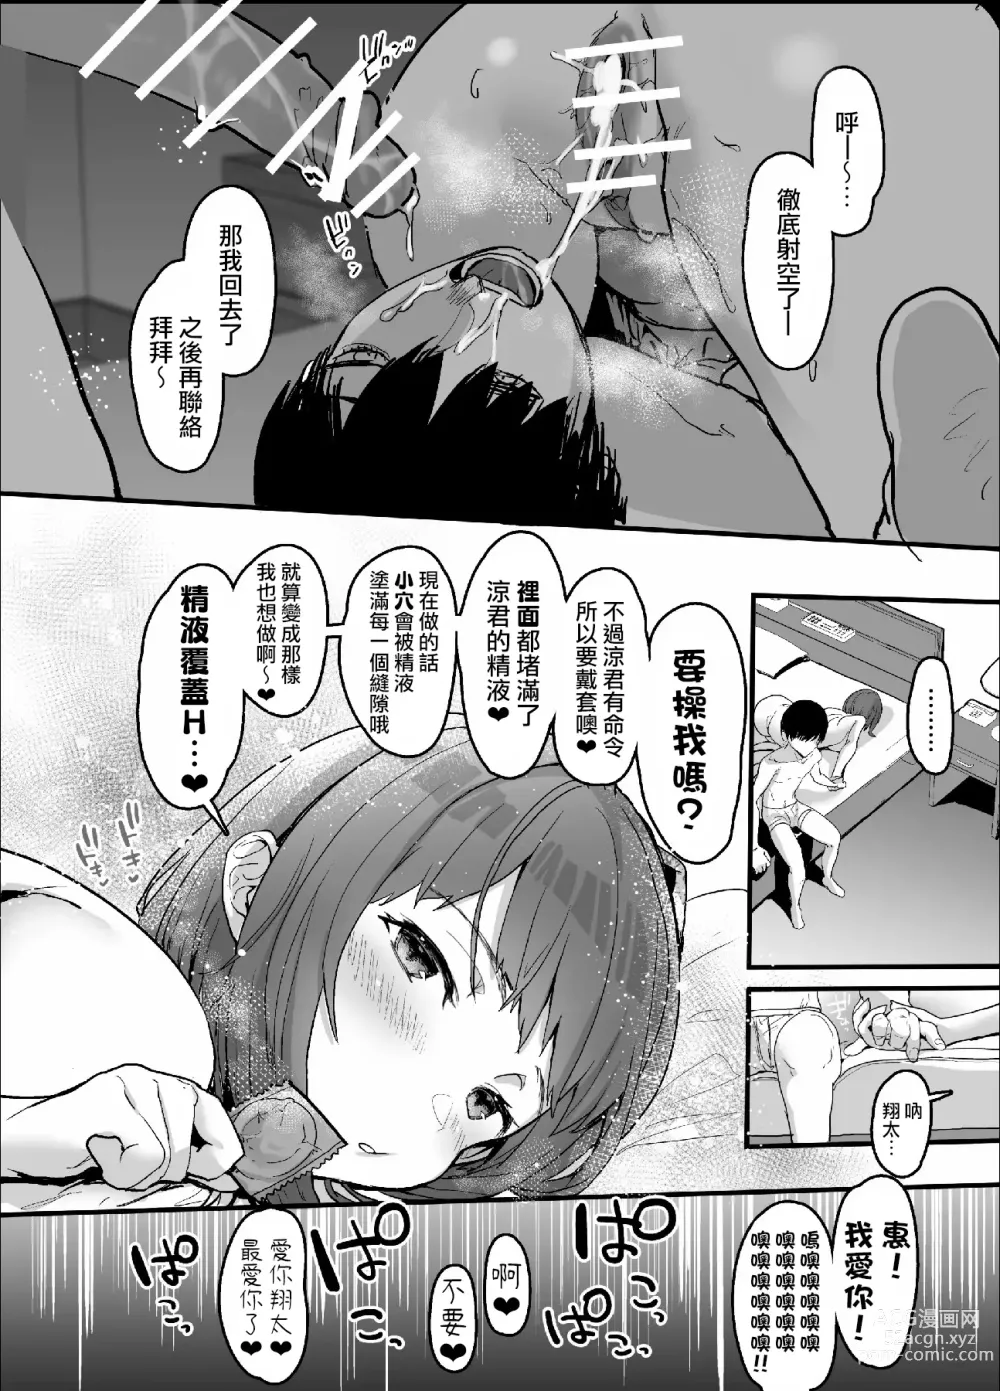 Page 67 of doujinshi ネトラセクラブ